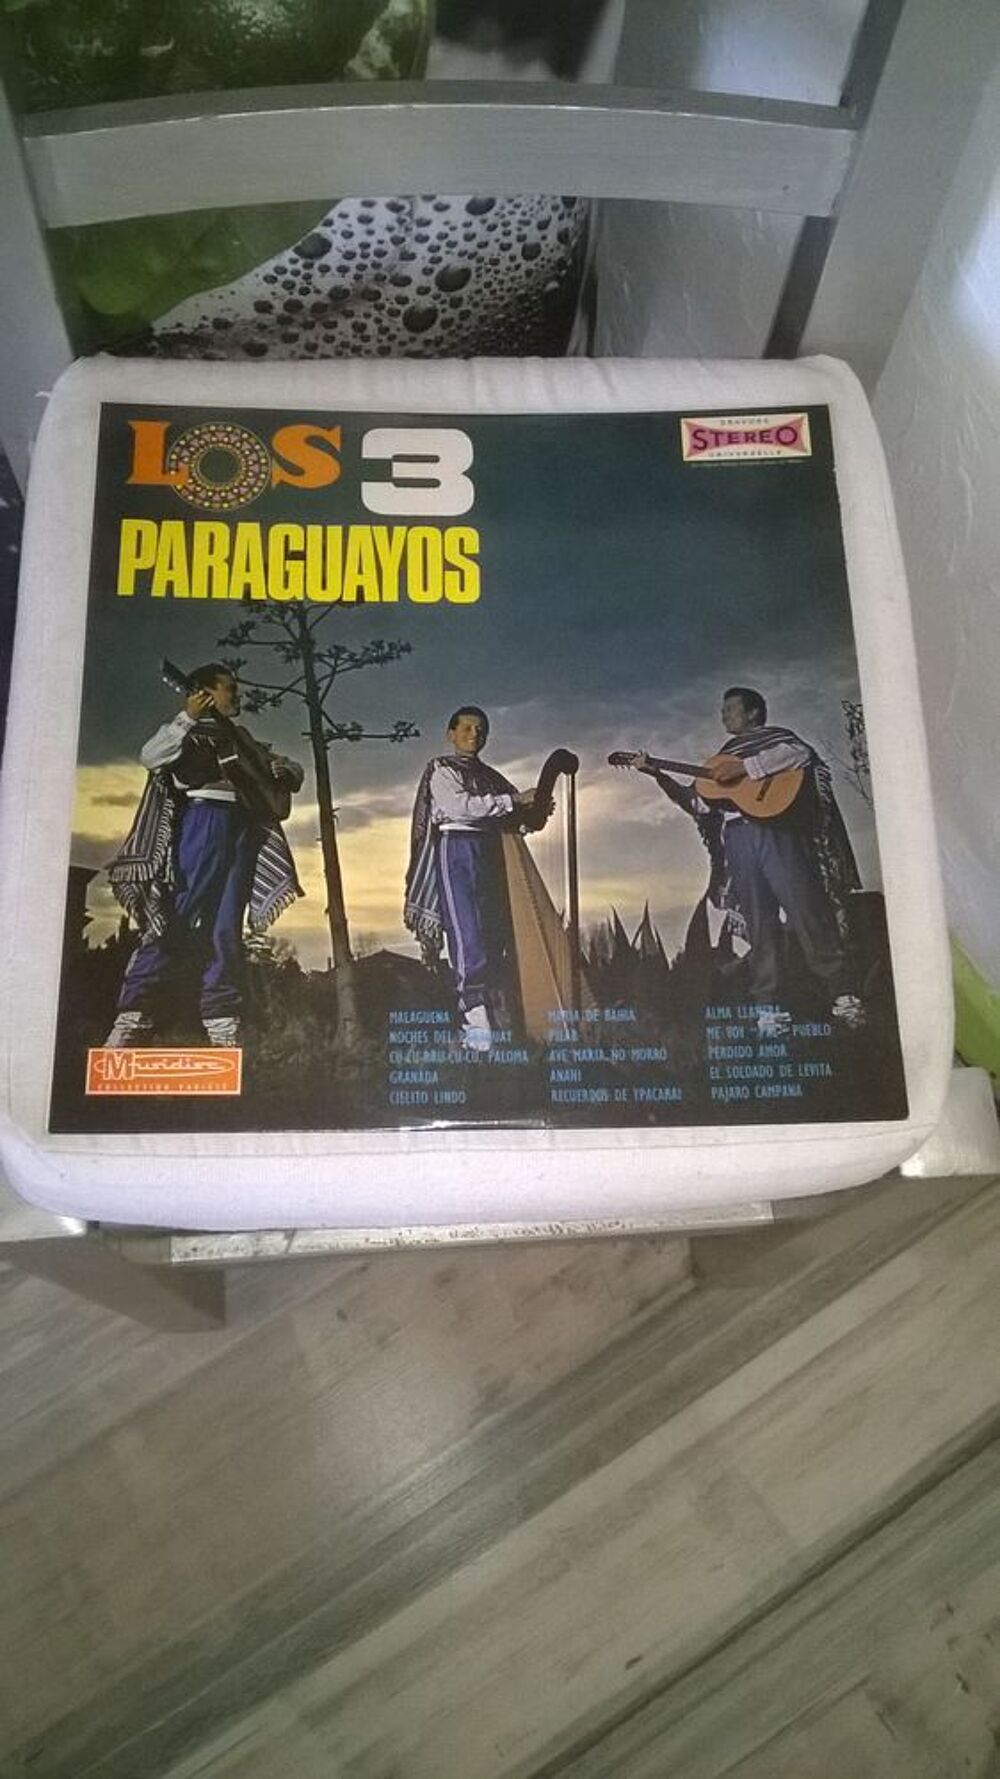 Vinyle Los 3 Paraguayos
Volume 1
Excellent etat
Malaguena CD et vinyles